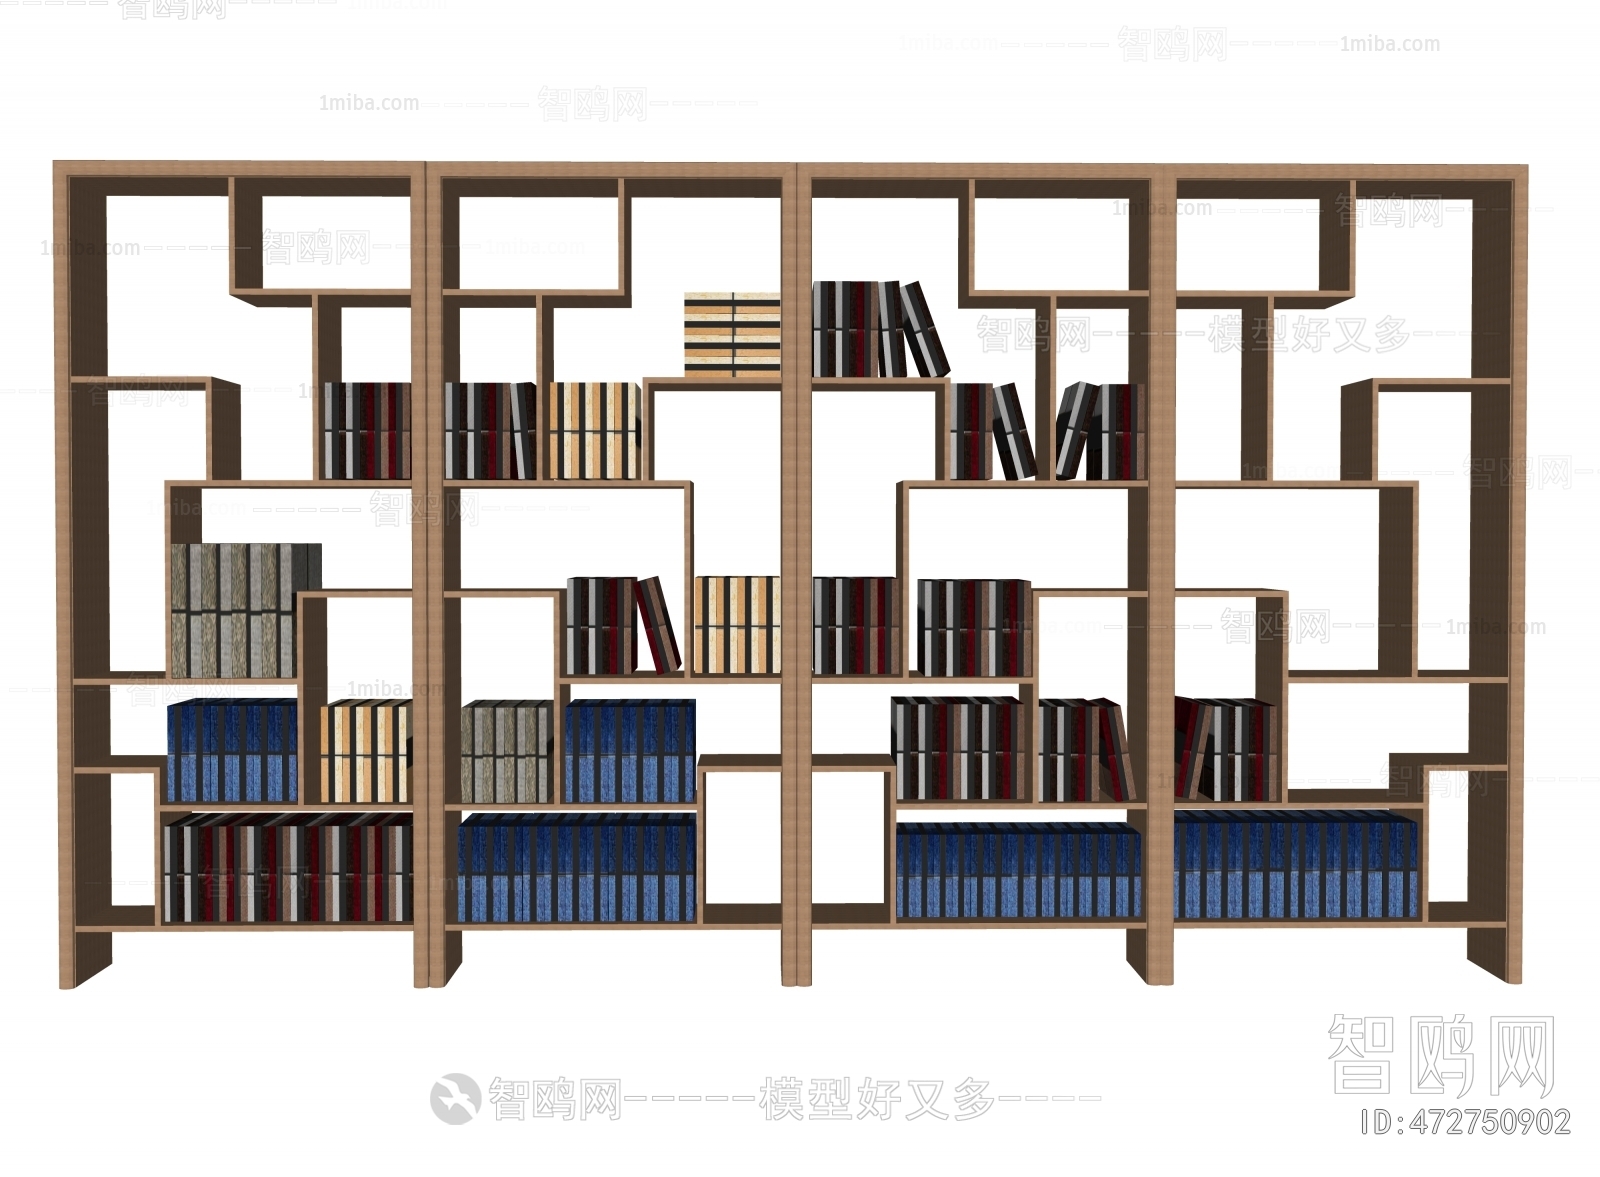 Chinese Style Bookshelf